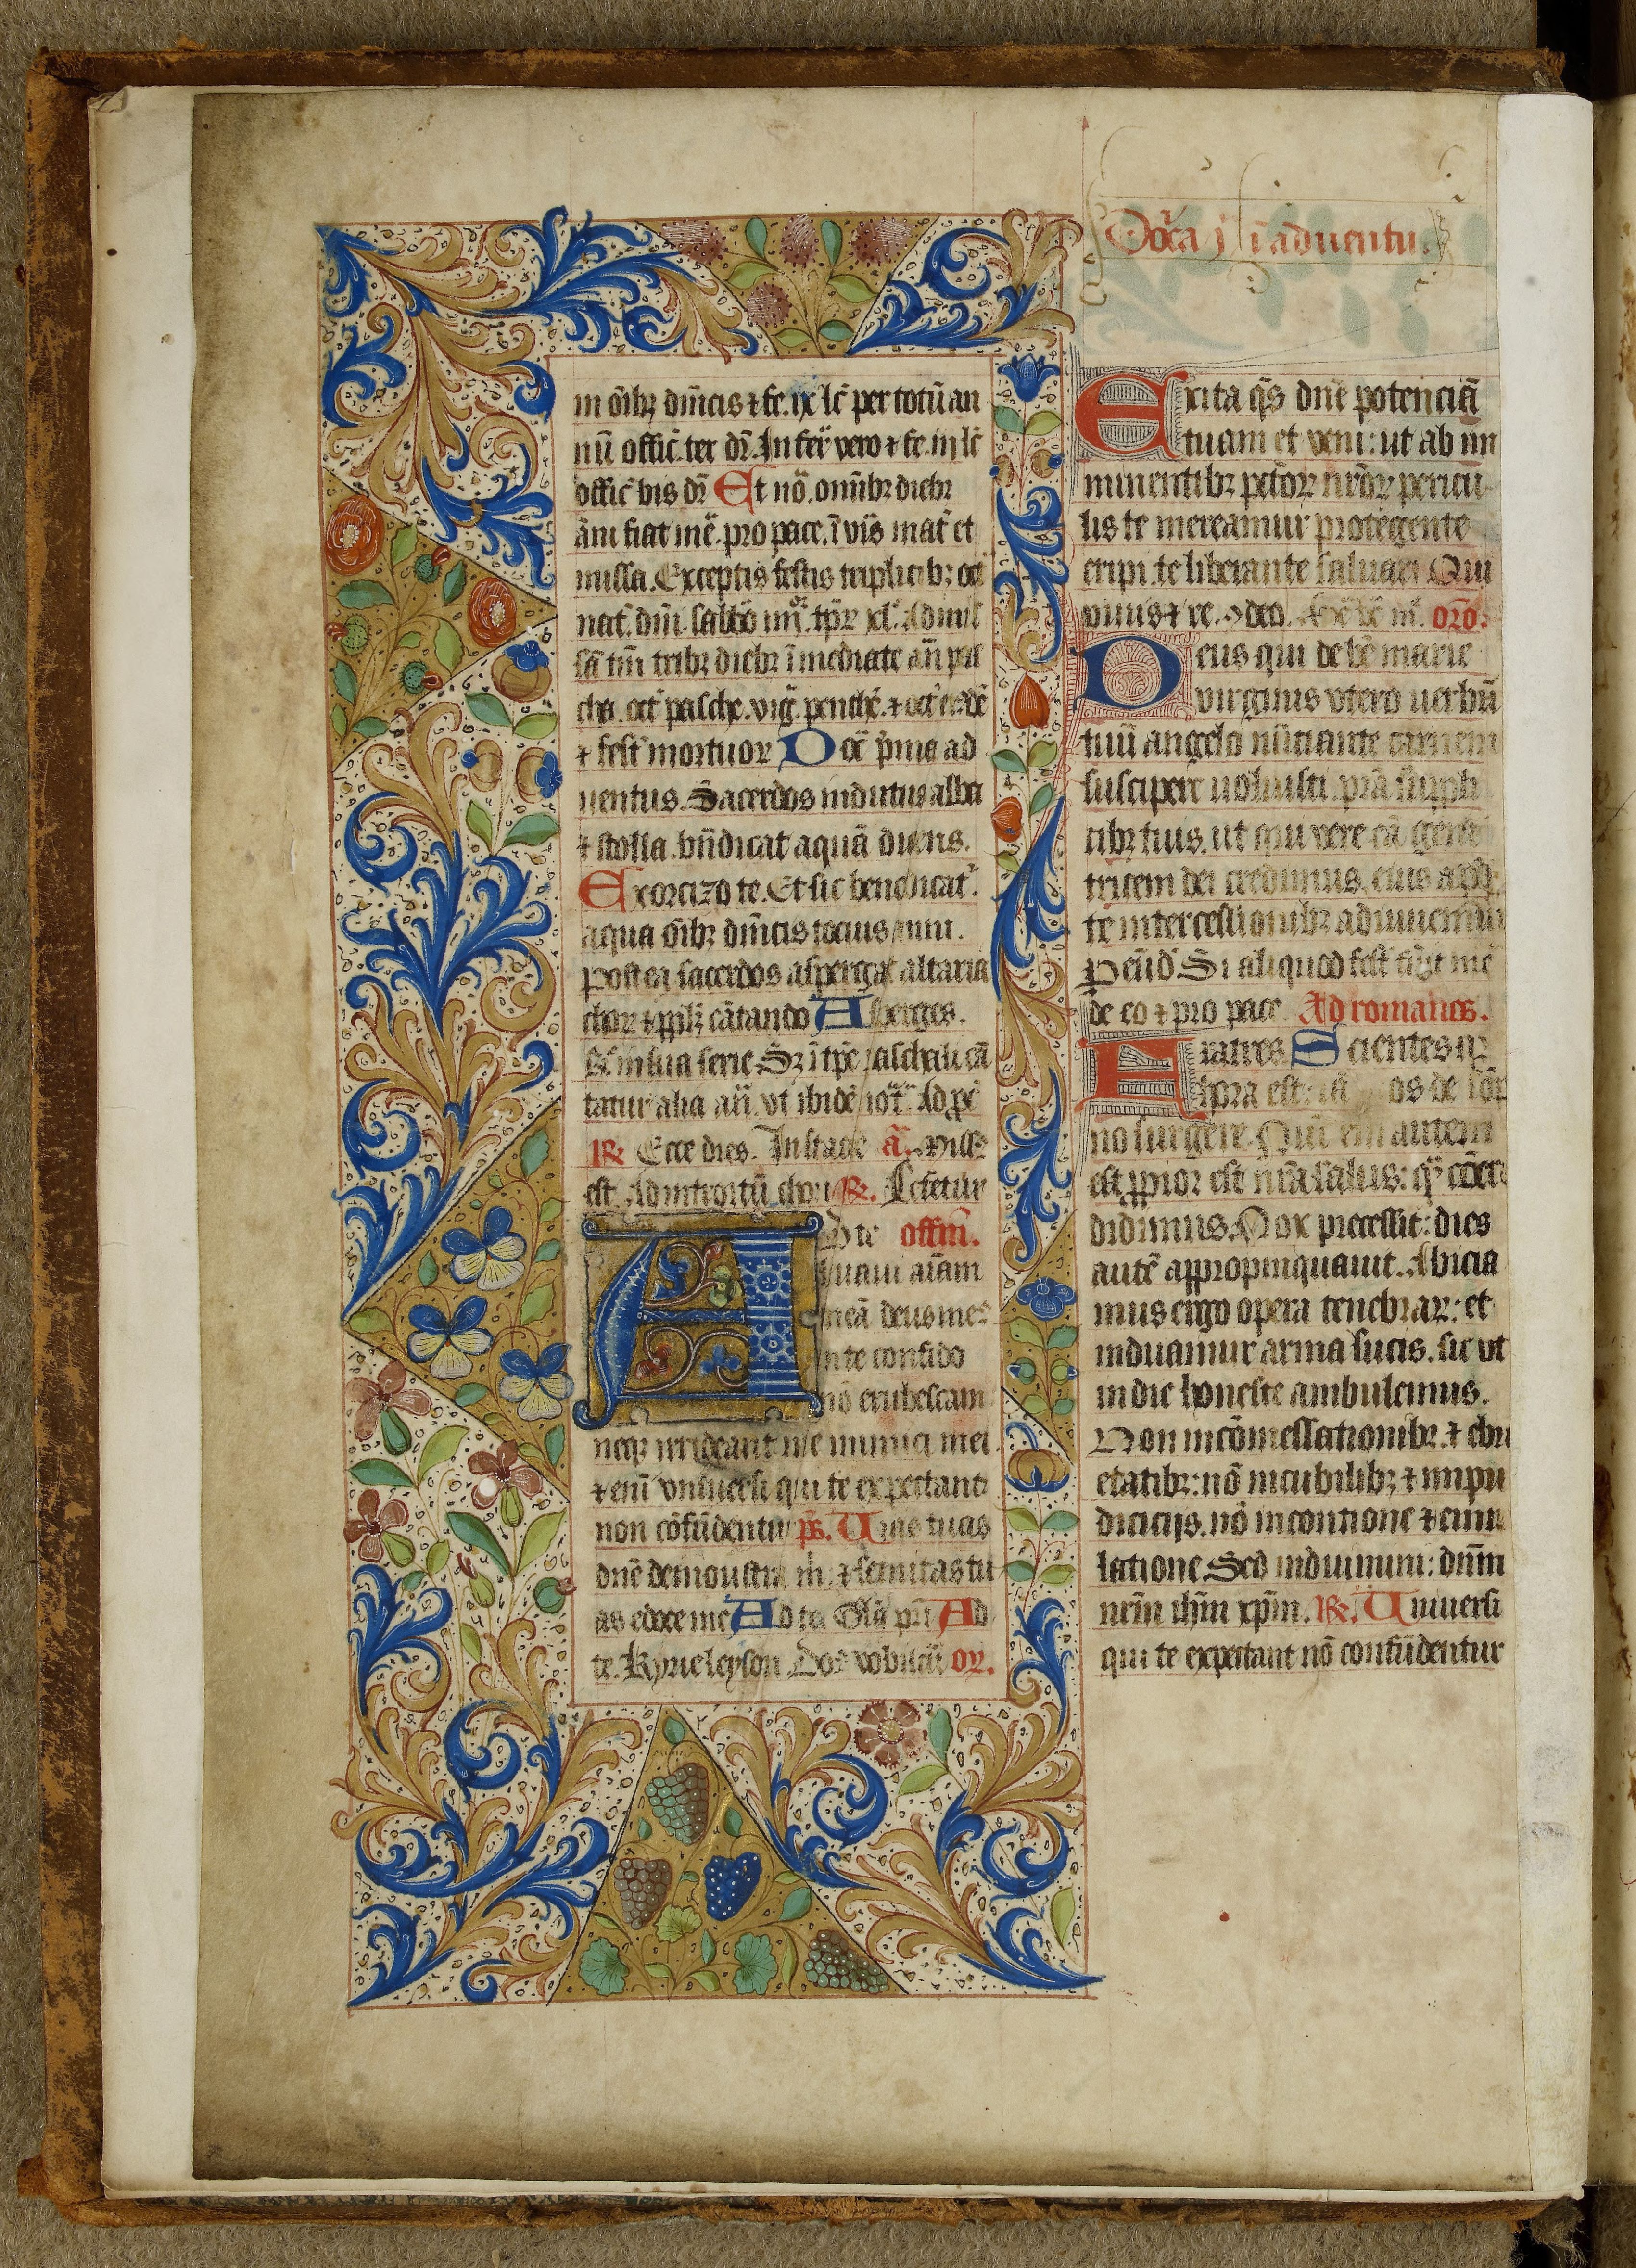 Décor de rinceaux de feuillages et de fruits. Liber missarum secundum usum Rothomagensem studiose compositus, 1450, f. 1 v°. Le Havre, bibliothèque municipale, Ms 325